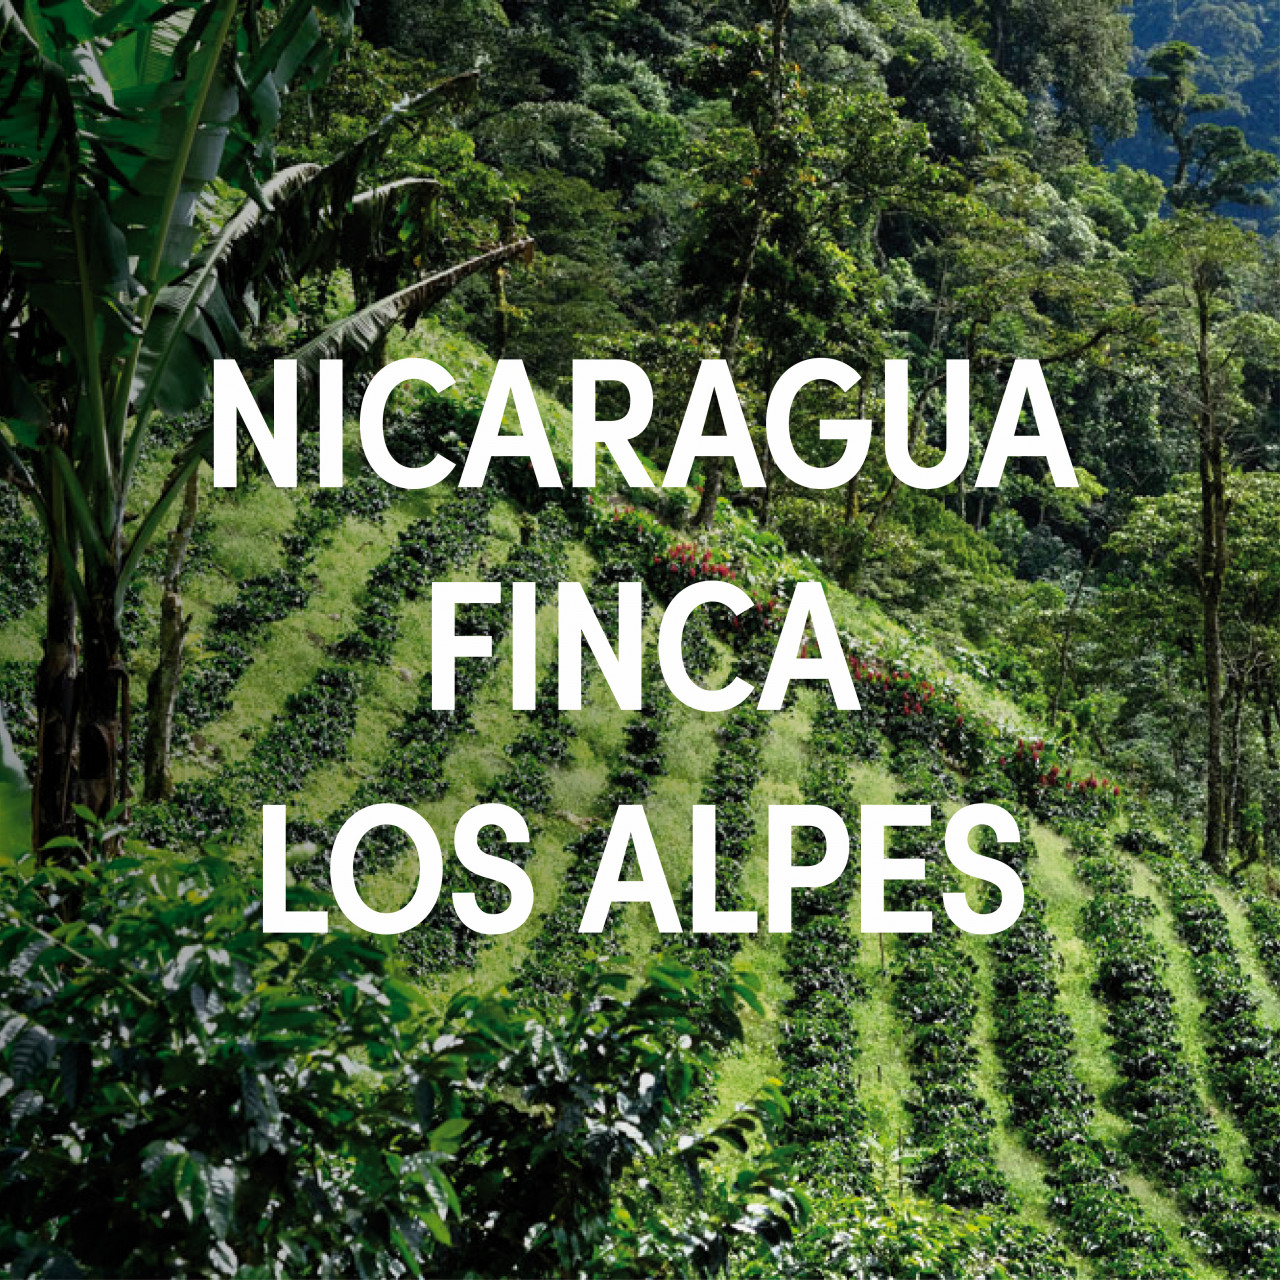 Nicaragua Finca Aurora